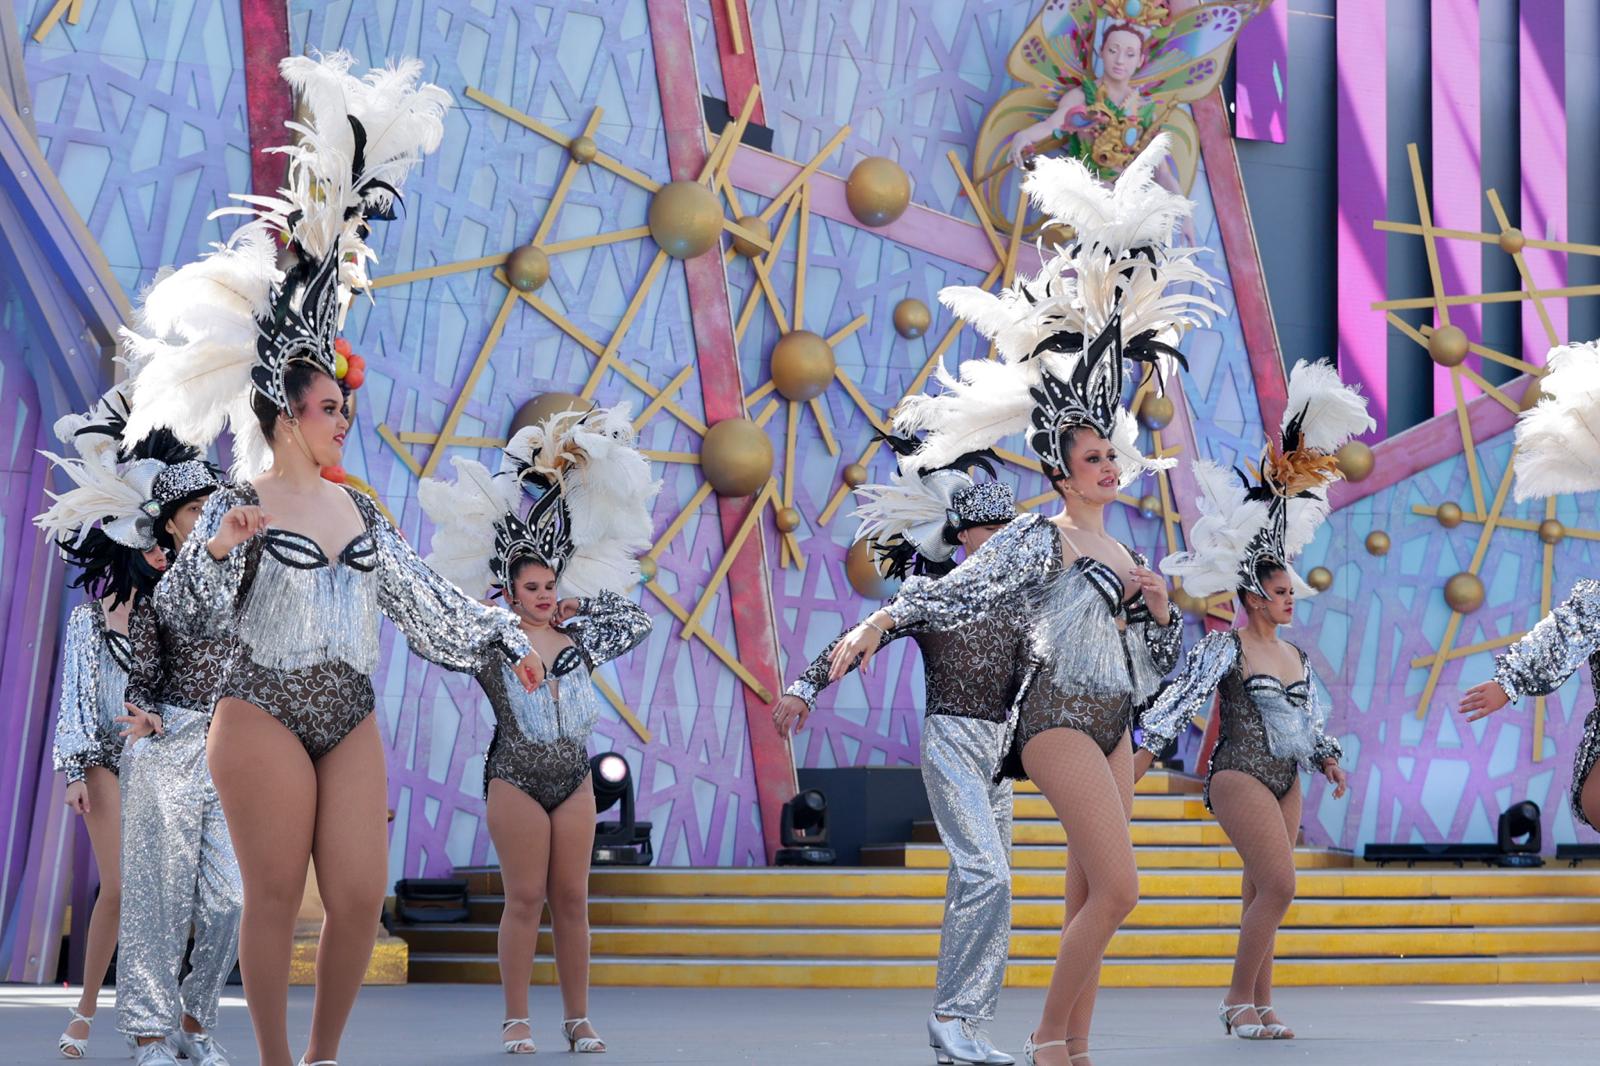 La cantera del carnaval de Las Palmas de Gran Canaria toma el escenario